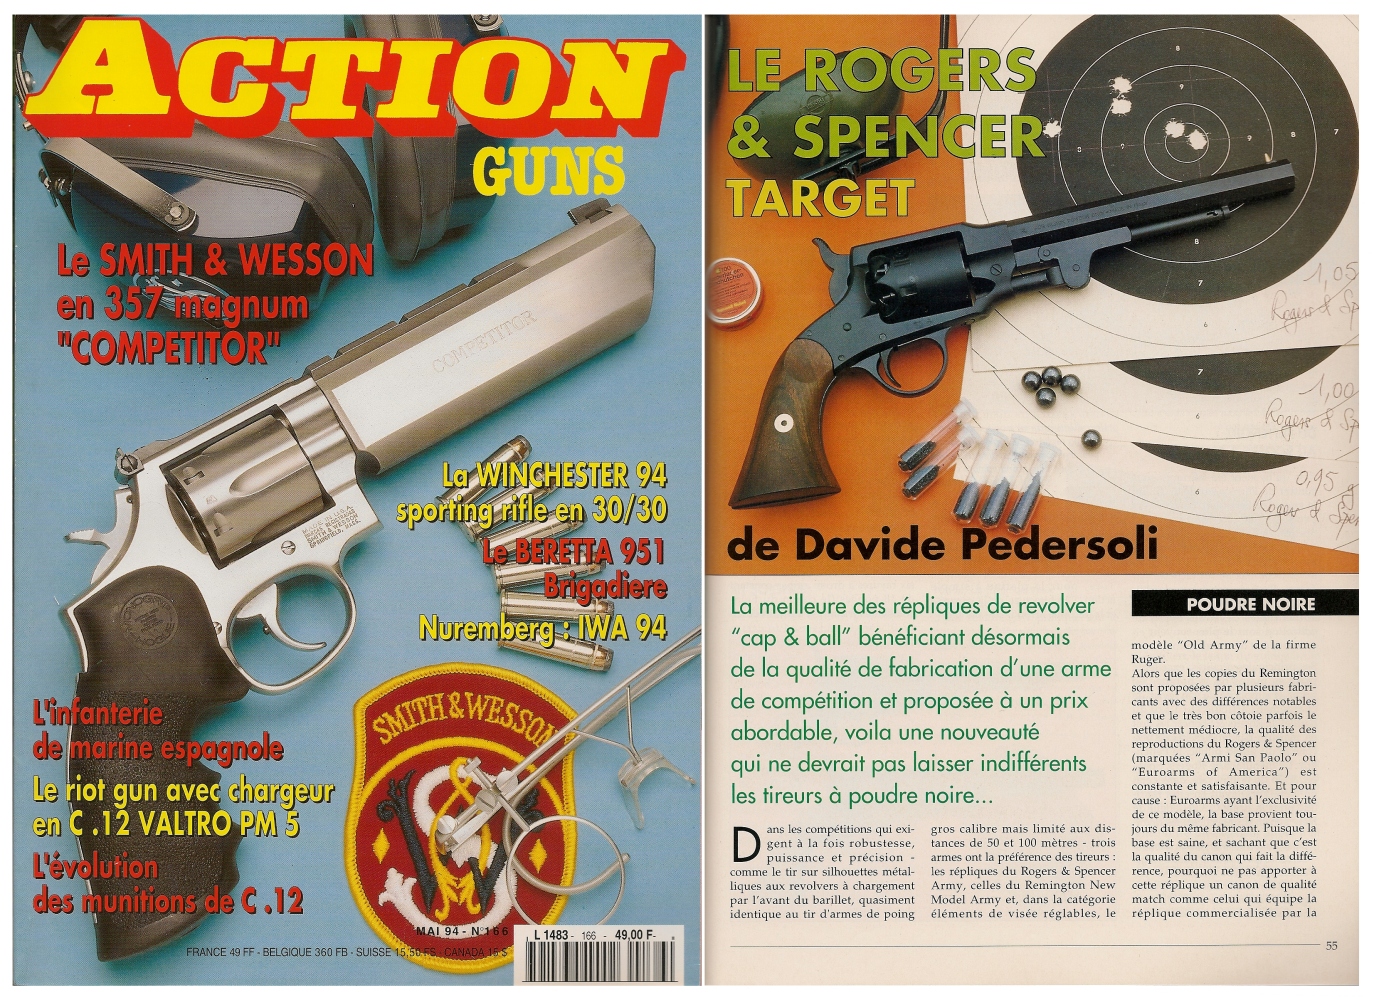 Le banc d'essai du revolver Rogers & Spencer Target a été publié sur 5 pages dans le magazine Action Guns n° 166 (mai 1994). 